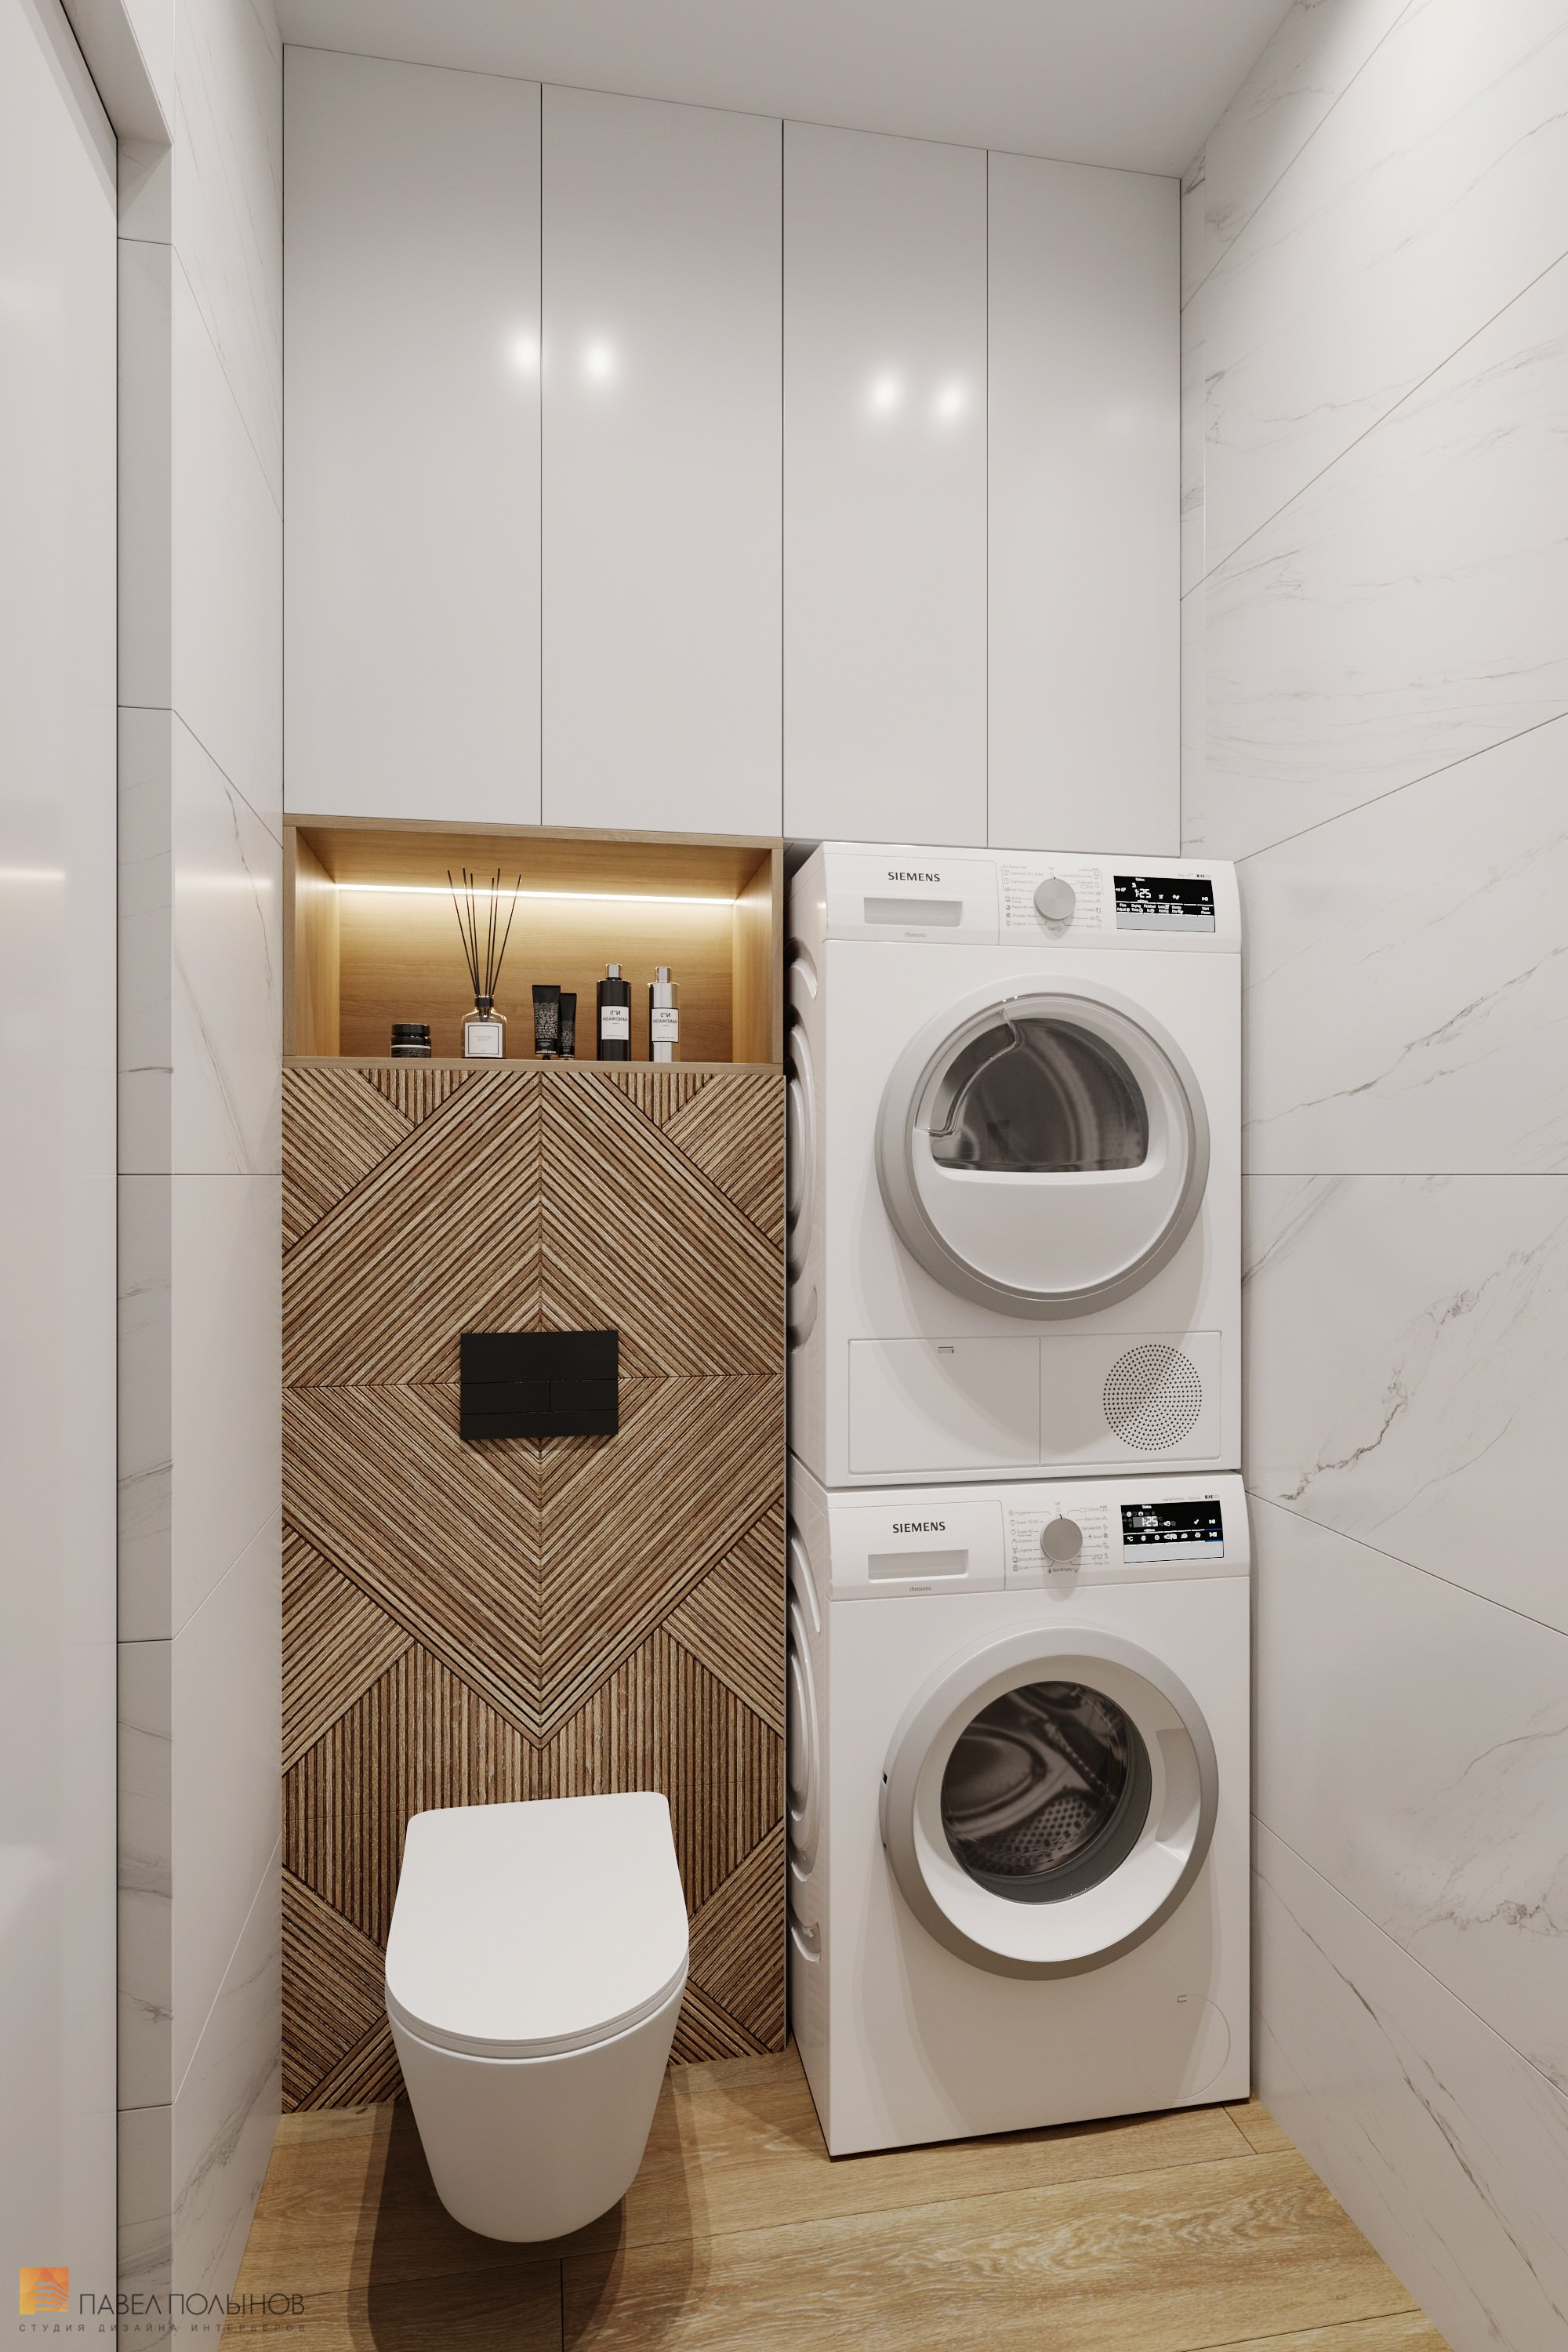 Фото дизайн интерьера ванной комнаты из проекта «Дизайн интерьера квартиры в современном стиле, ЖК «Сердце столицы», 98 кв.м.»